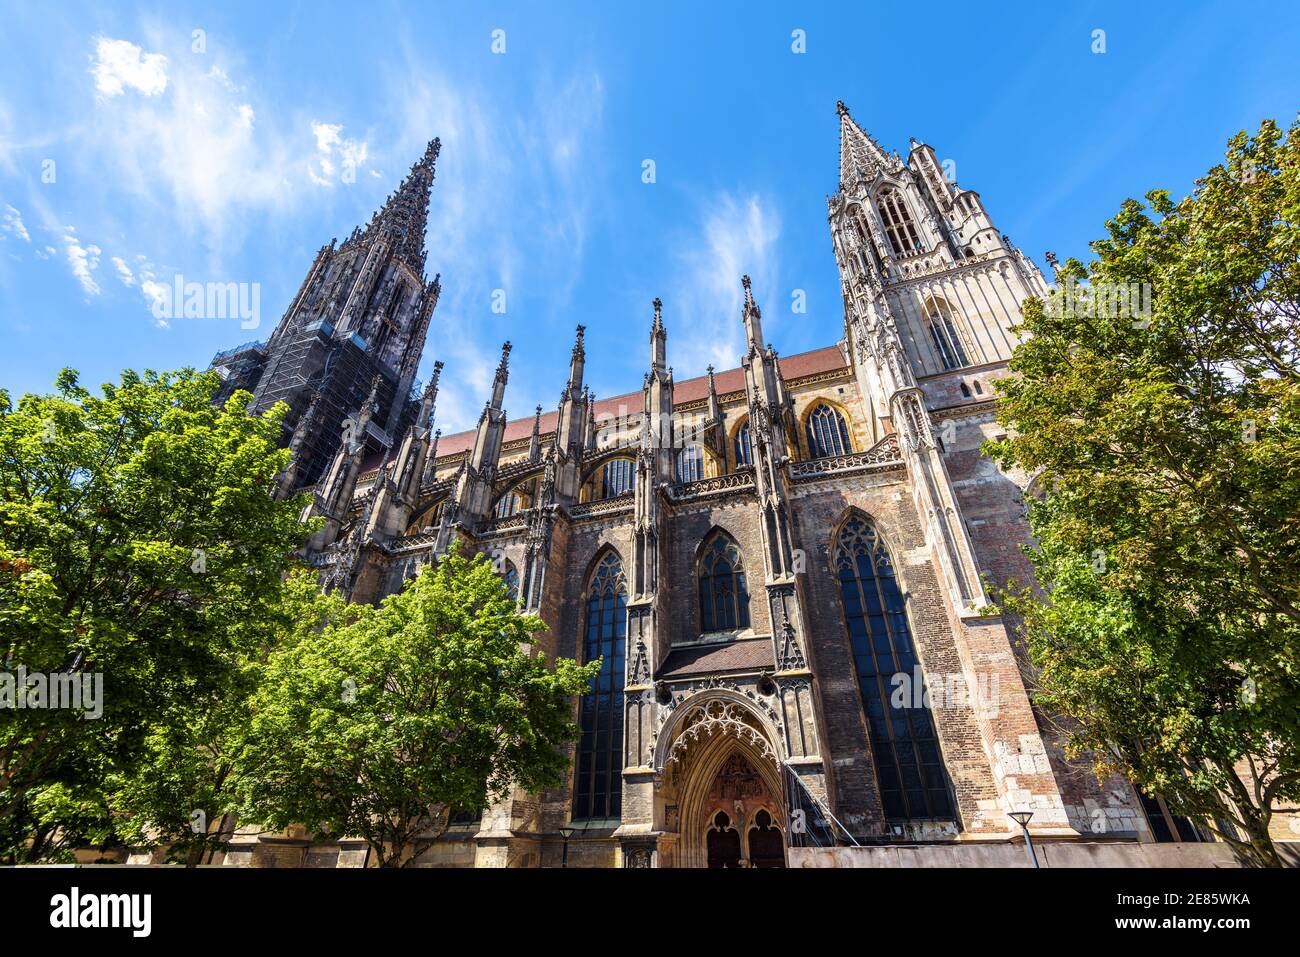 Ulm Minster o Cattedrale della città di Ulm, panorama di ornate chiesa gotica esterno, Germania. E' un famoso punto di riferimento di Ulm. Scenario di medievale europeo A. Foto Stock